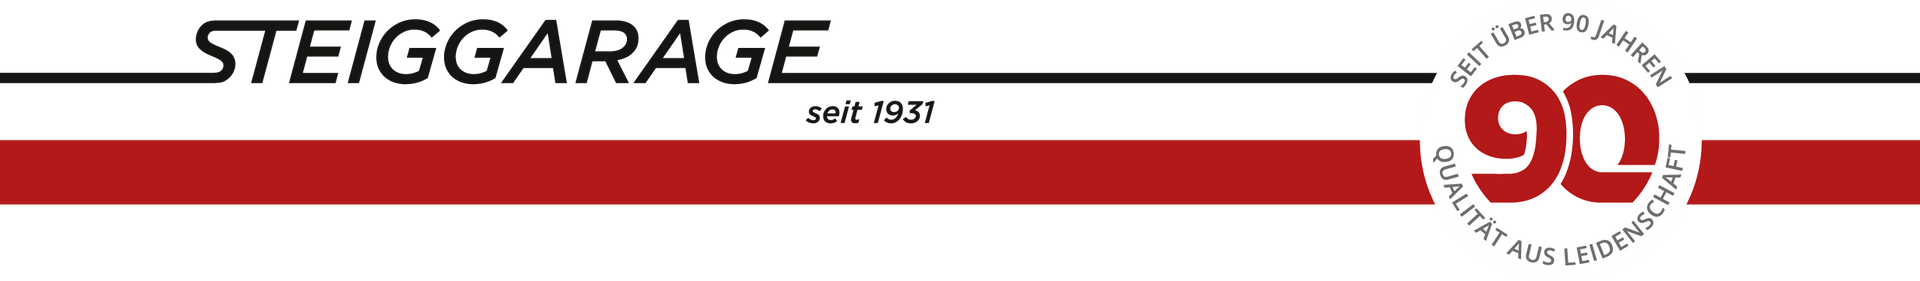 Steiggarage seit 1931 logo Garage